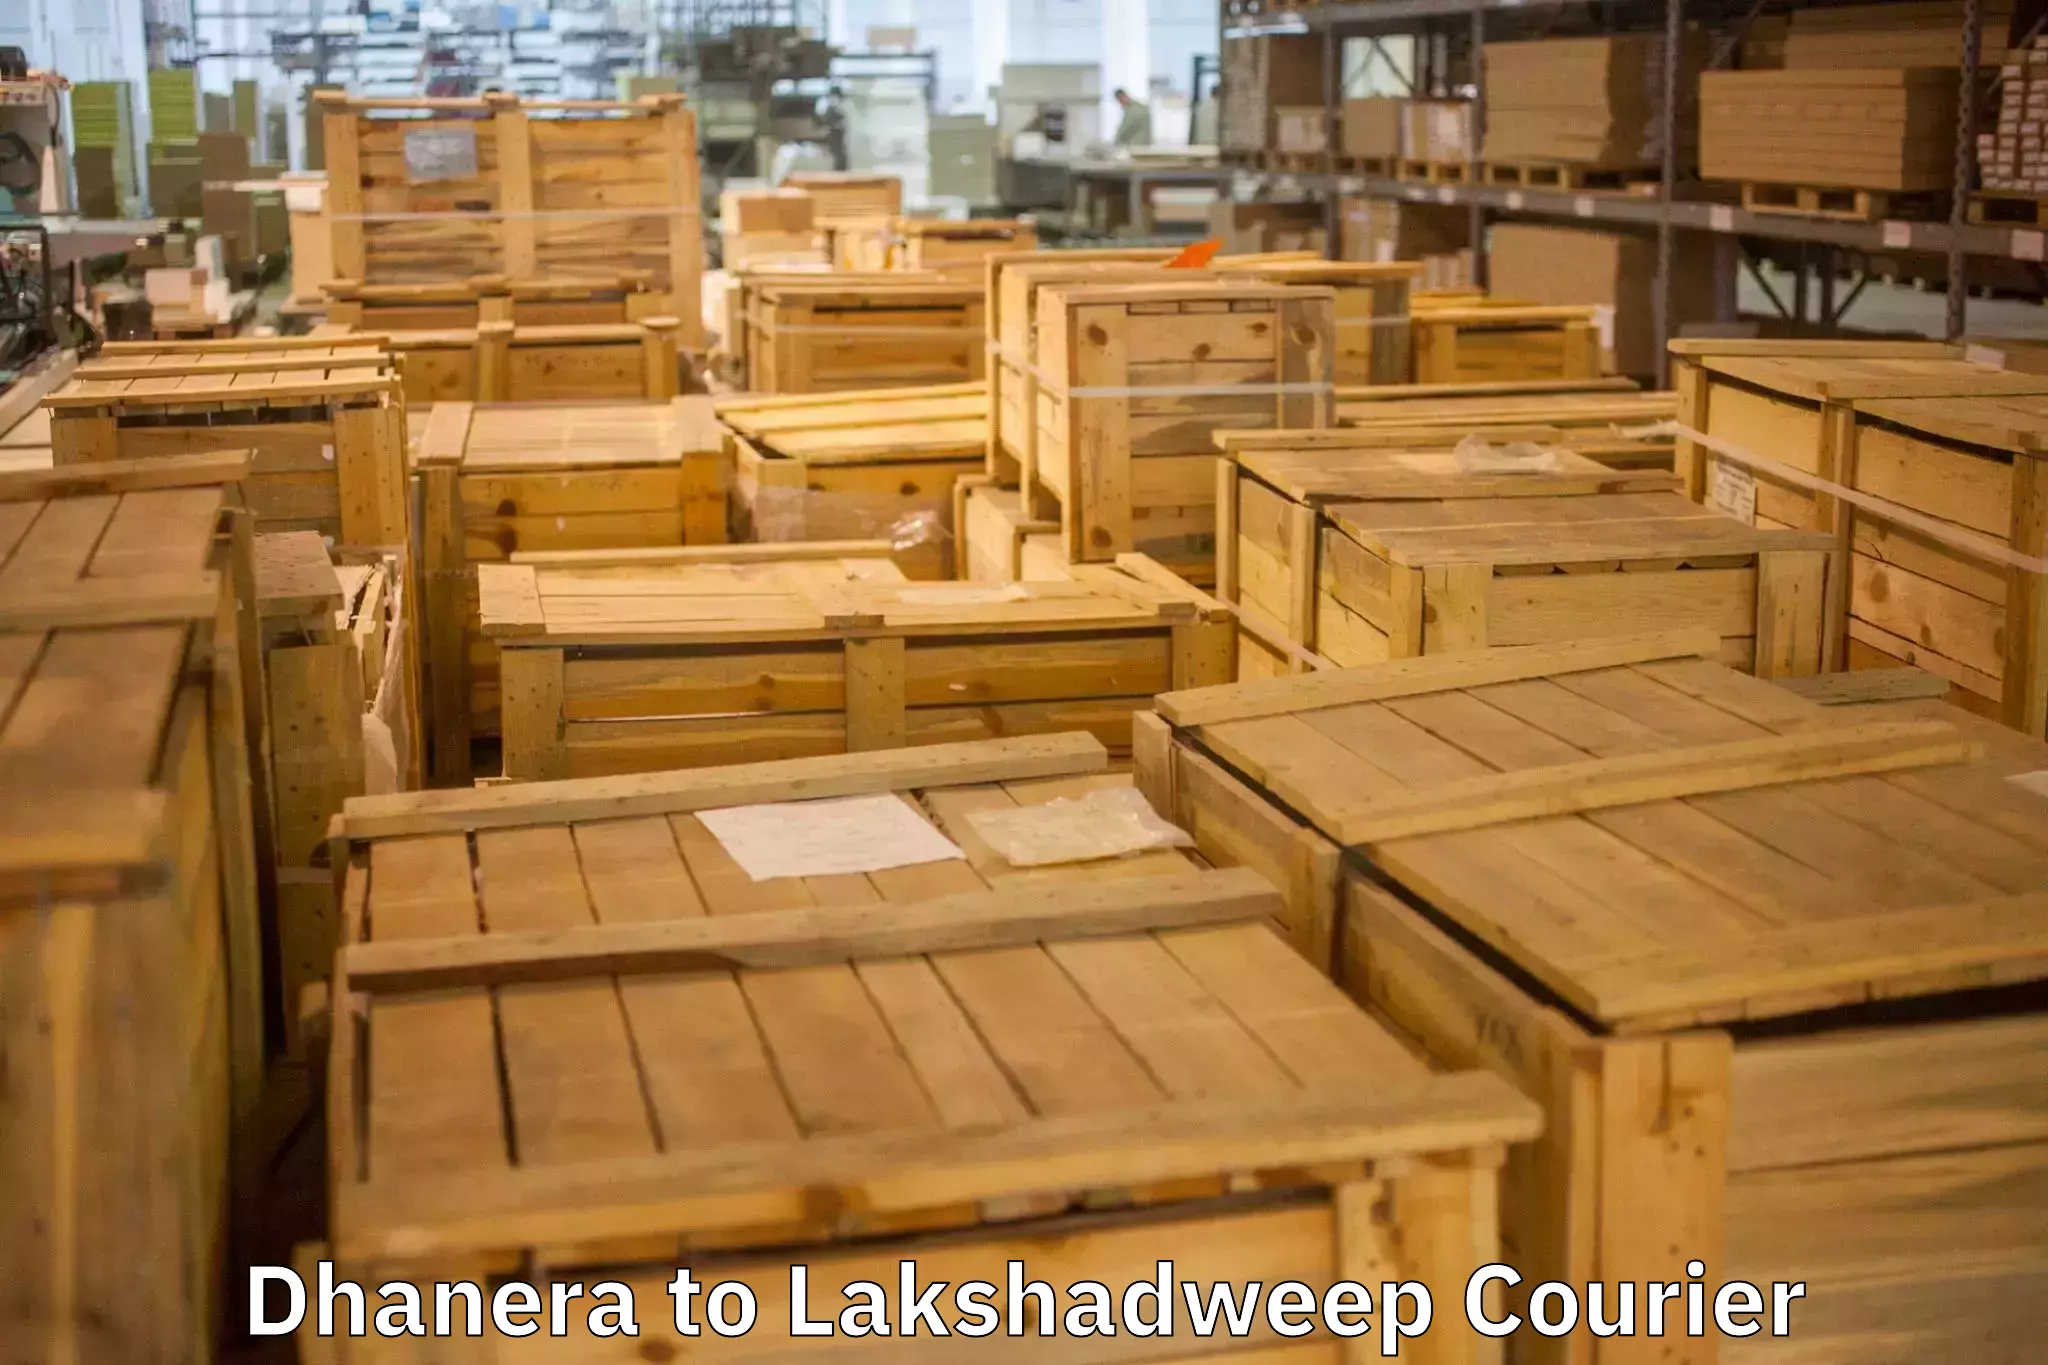 Furniture transport and storage Dhanera to Lakshadweep